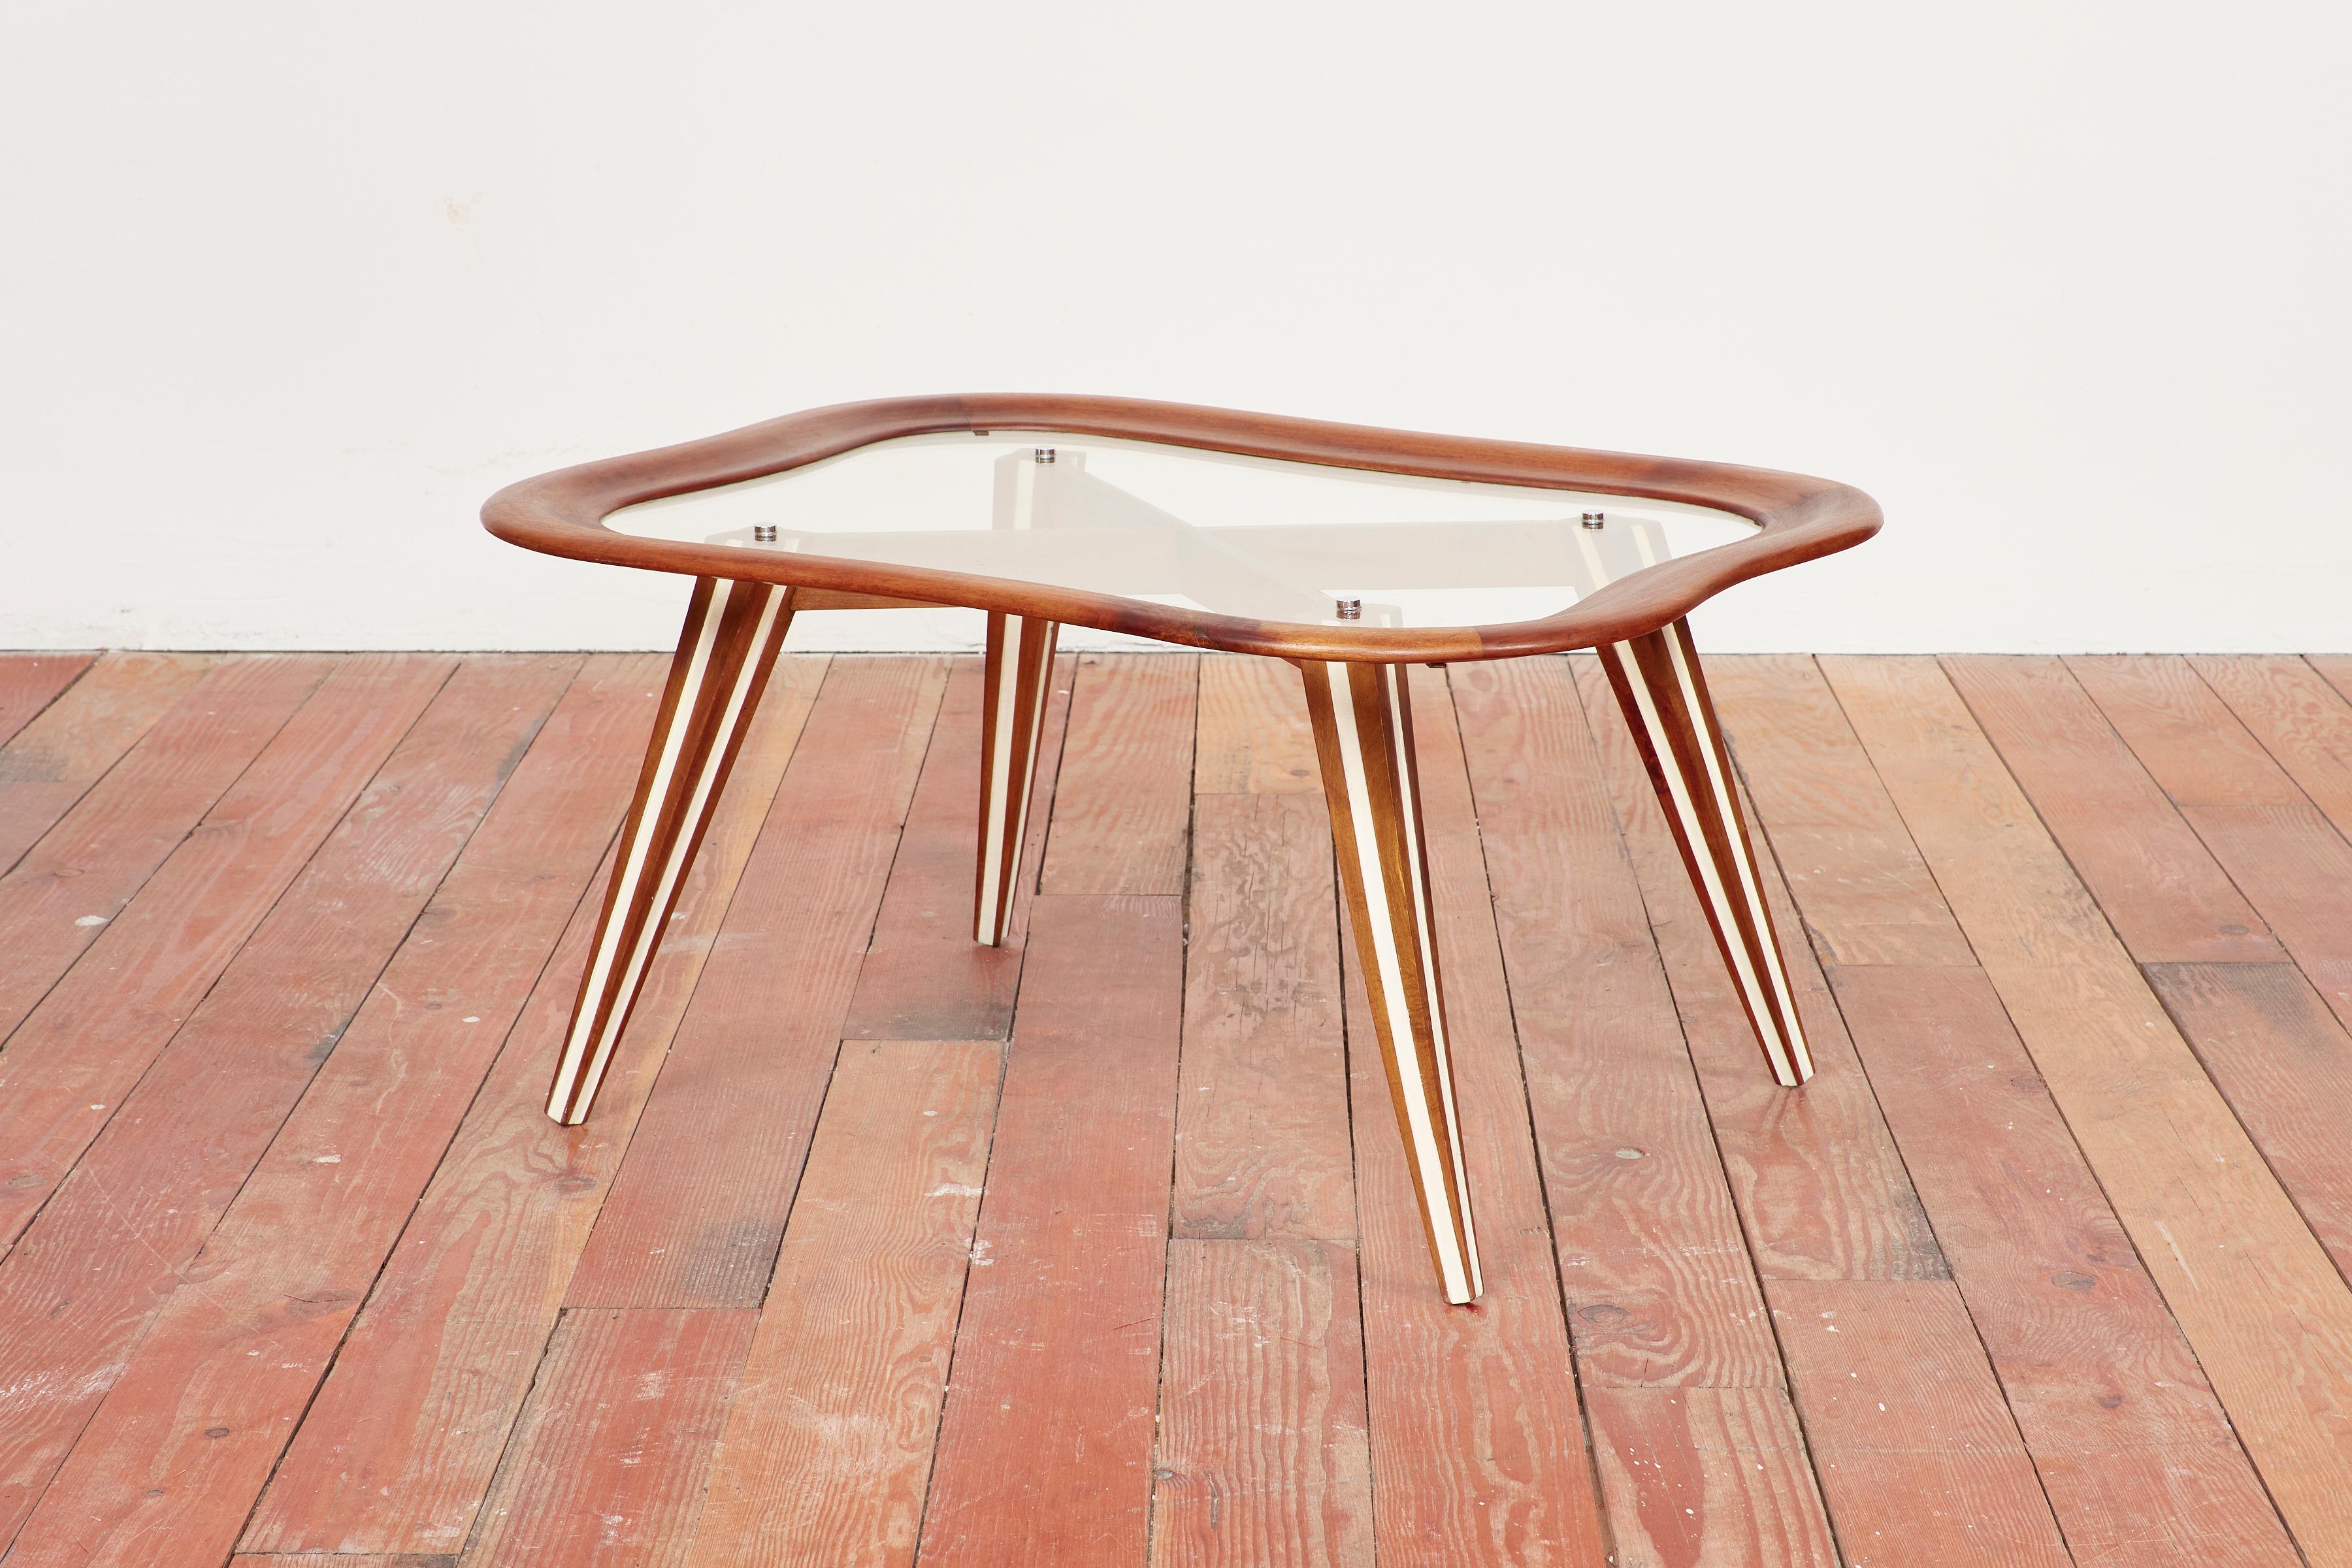 Table d'appoint italienne du designer Chrissotti Filippo 
Verre en forme d'amibe avec cadre en bois et pieds angulaires
Accents en laiton
Excellente pièce